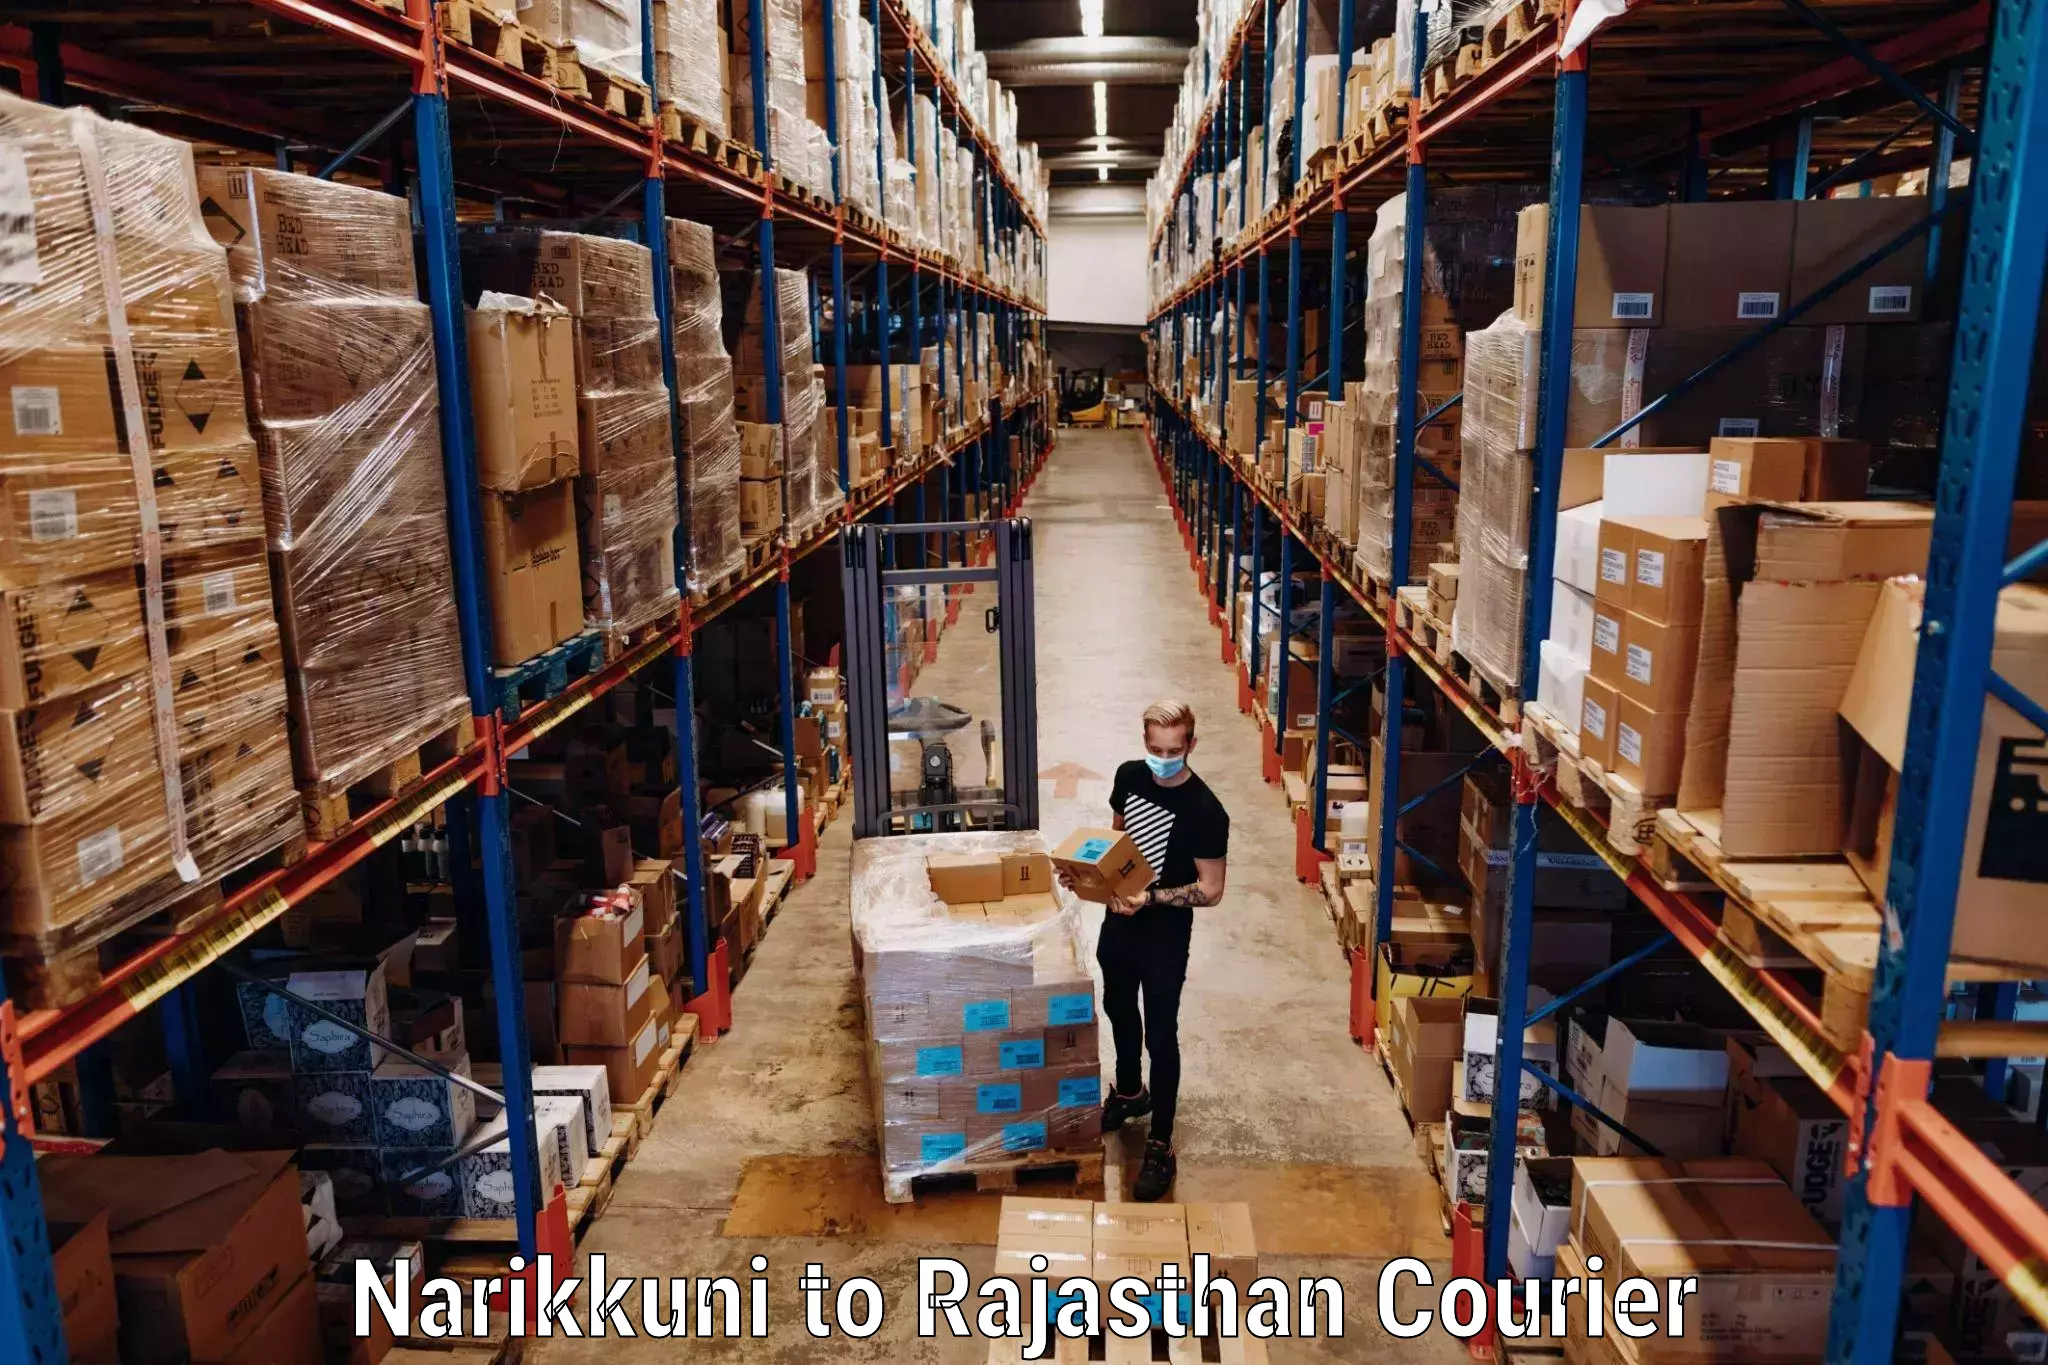 Baggage courier optimization Narikkuni to Rajasthan